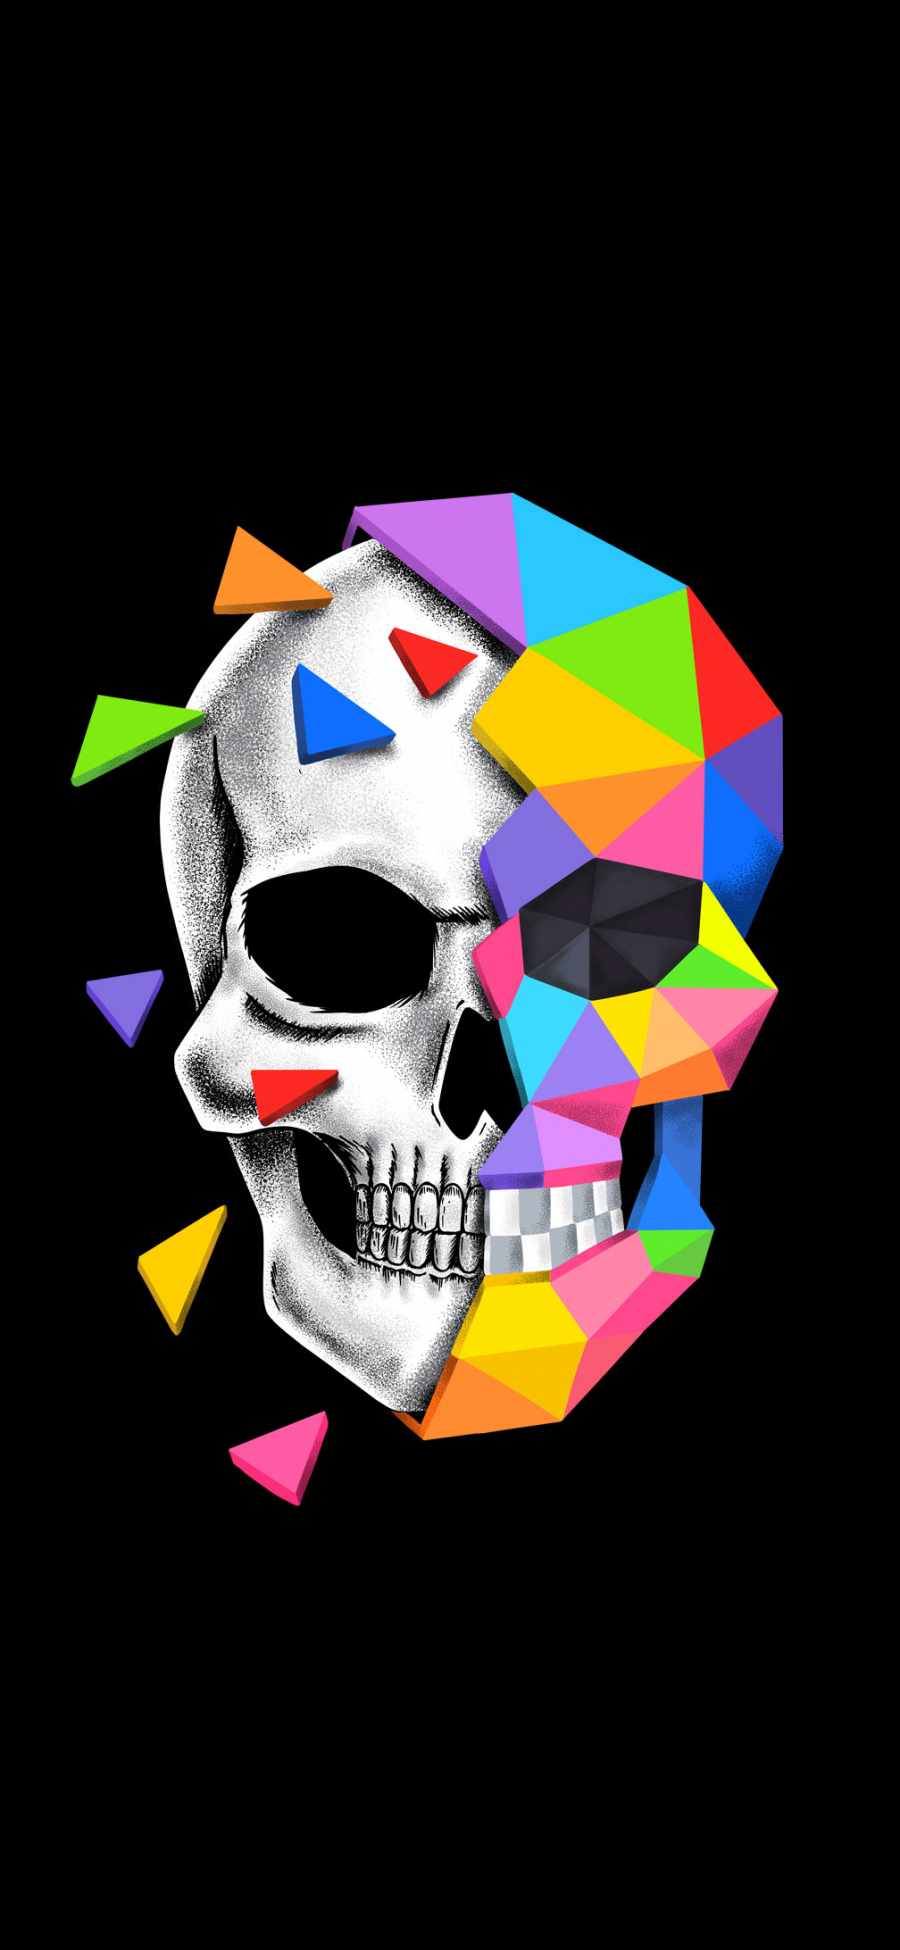 Skull Defragmentation HD iPhone Wallpaper